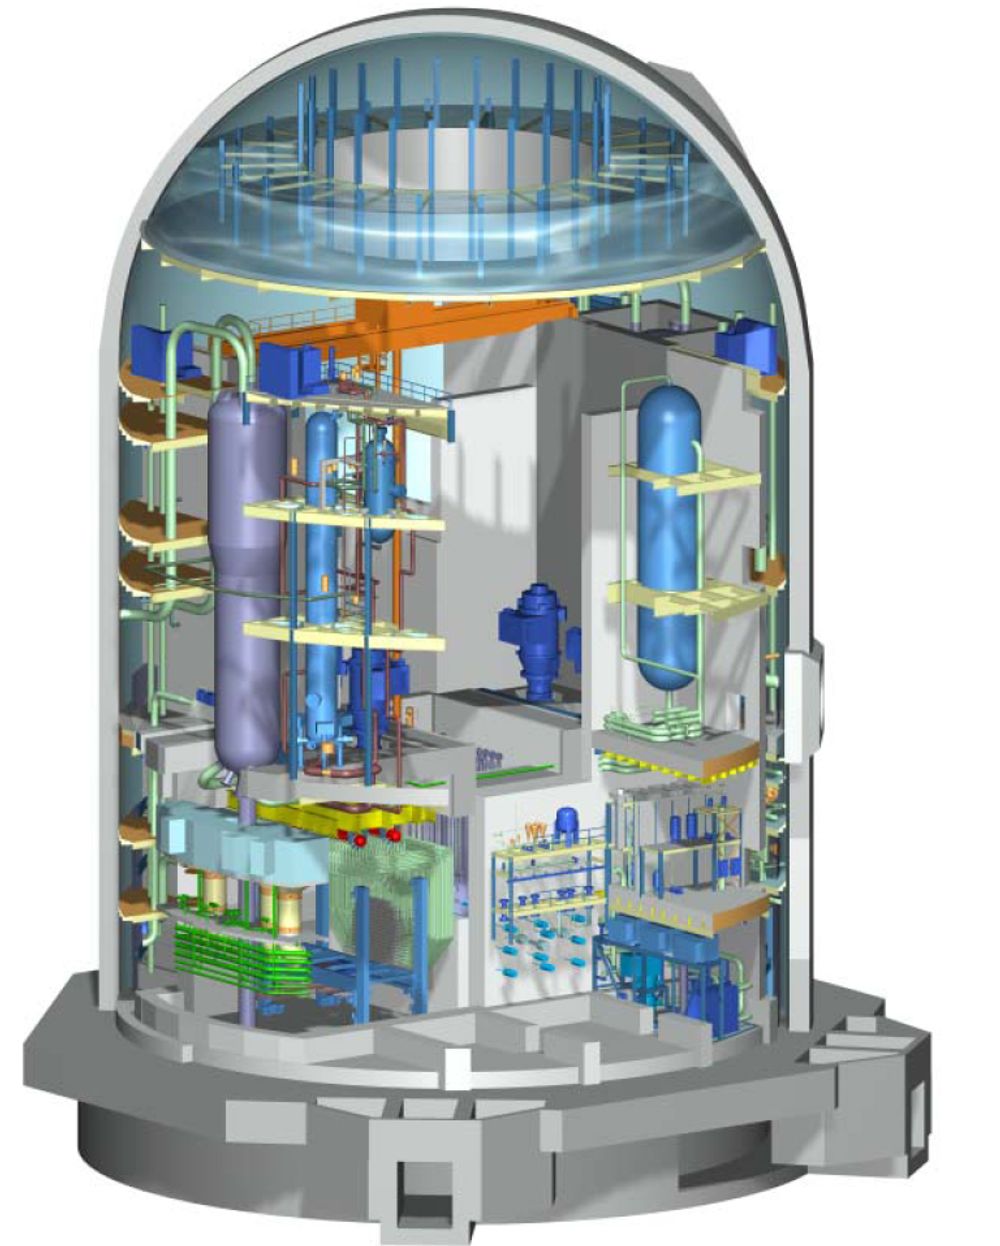 NY TEKNOLOGI: ACR-1000 (Advanced CANDU Reactor) er AECLs nyeste reaktor, og den Thor Energy vurderer å bruke i Norge. Den er, ifølge selskapet, mer fremtidsrettet og sikker enn noen annen reaktor.